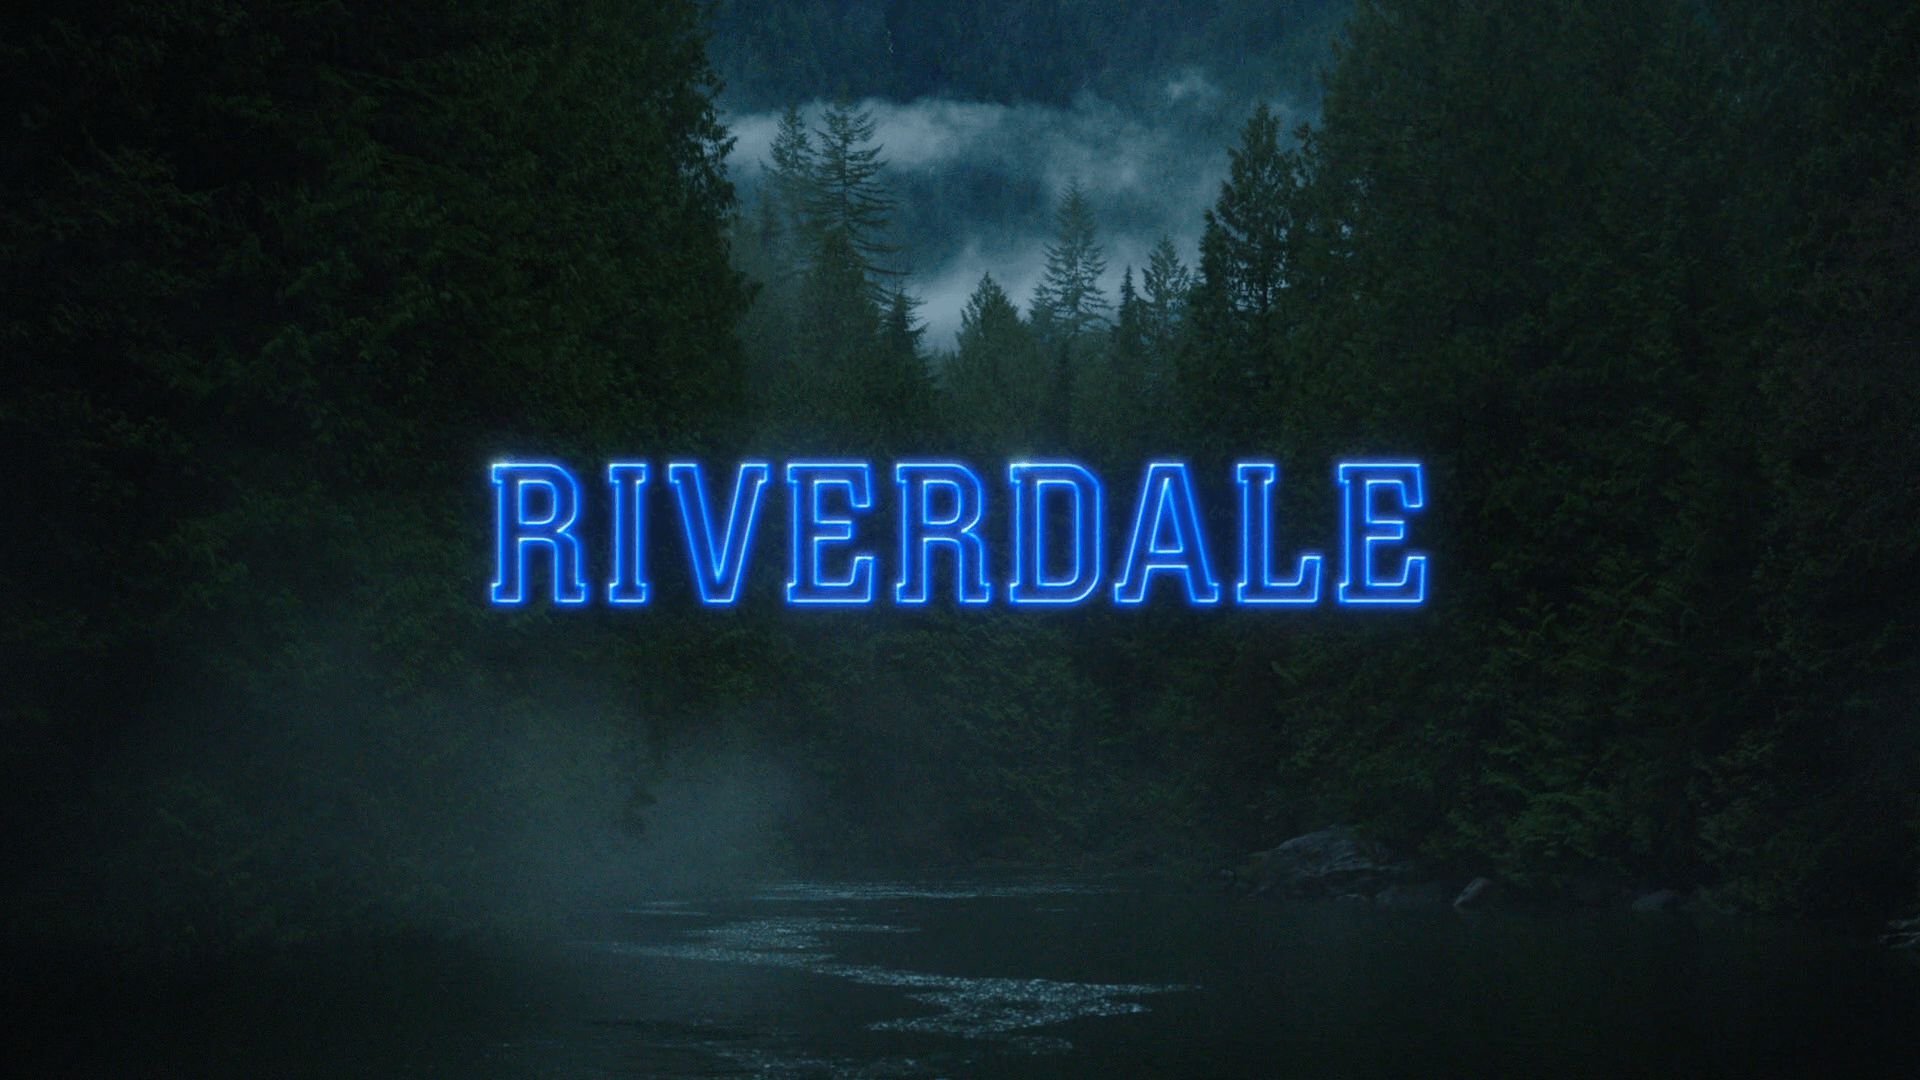 Riverdale. Riverdale aesthetic, Riverdale cw